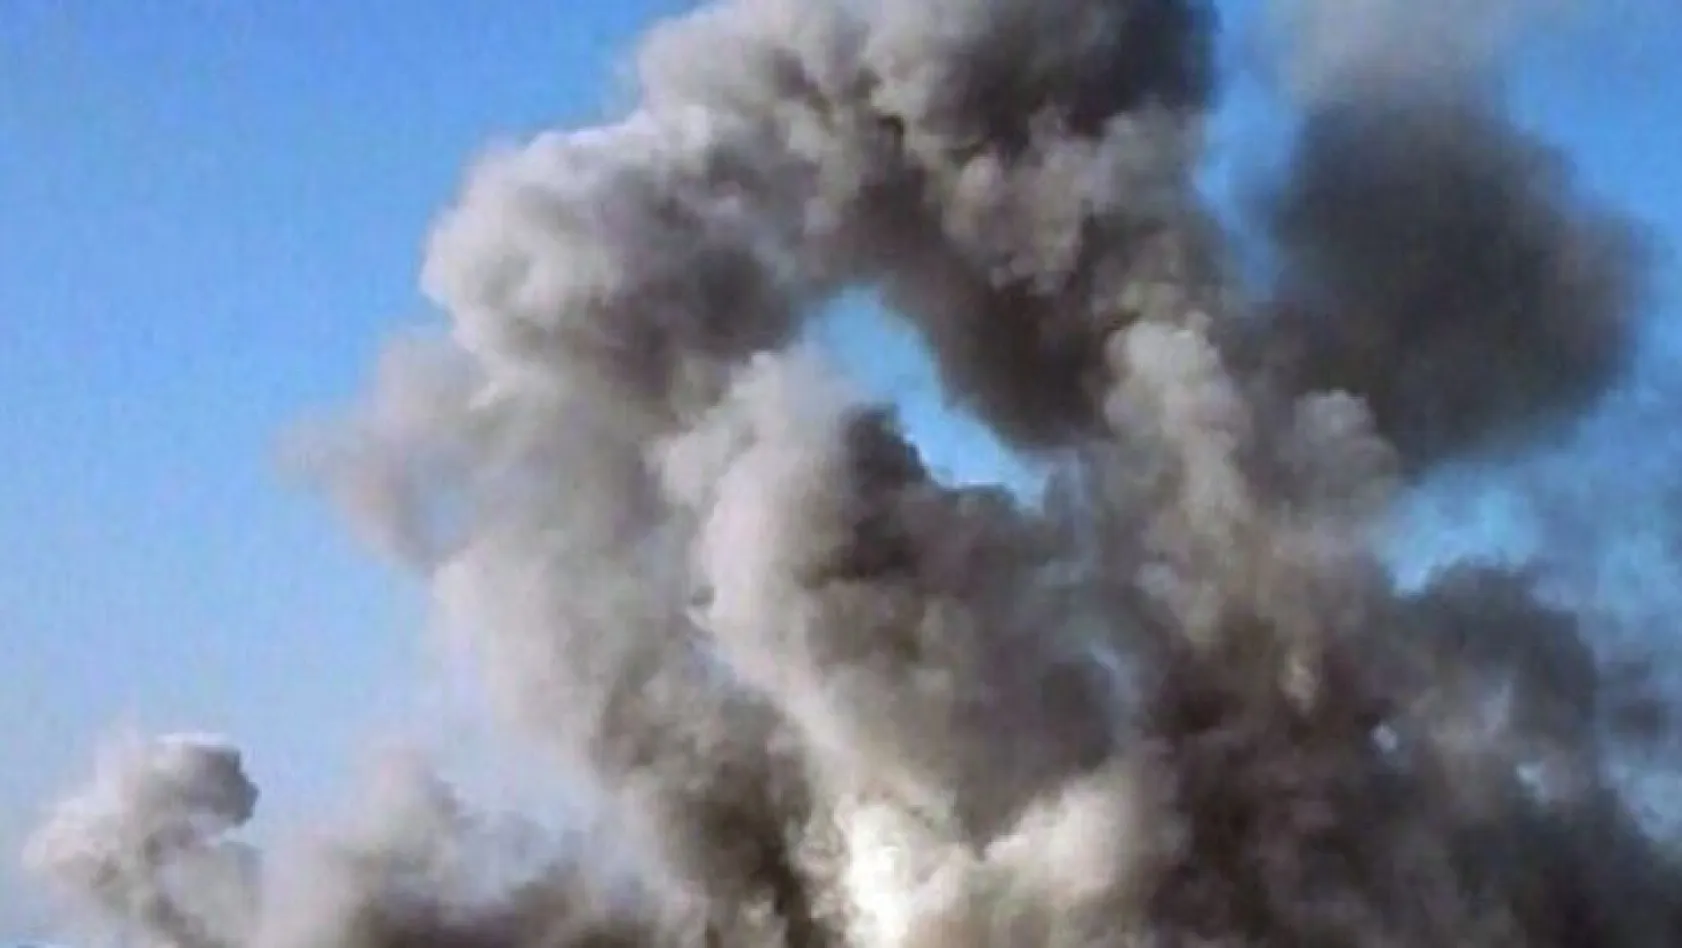 Somali'de Türk müteahhitlere bombalı saldırı